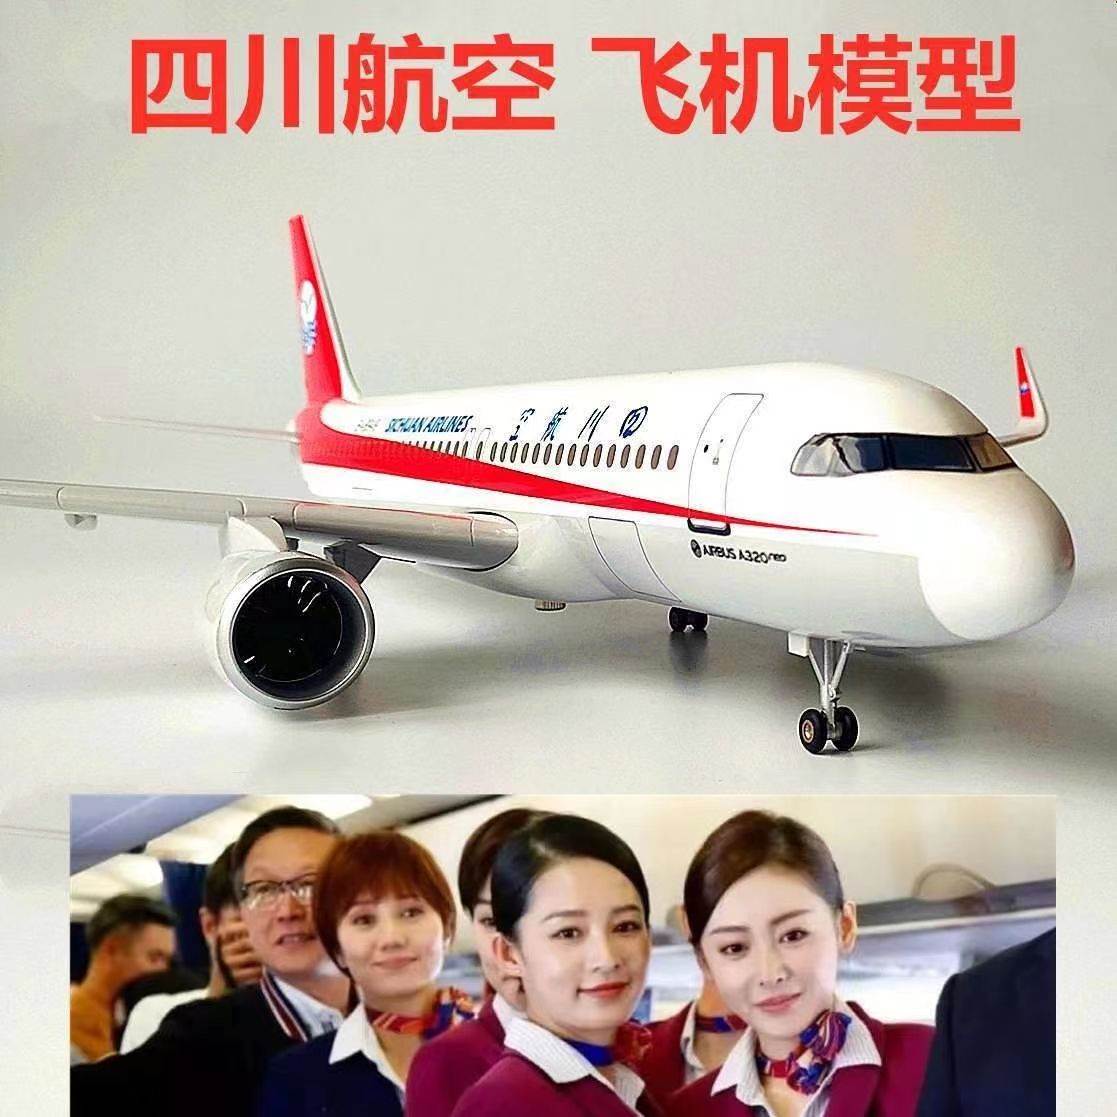 中国四川航空川航带轮子飞机纪念品模型仿真客机A319机长3U8633 - 图2